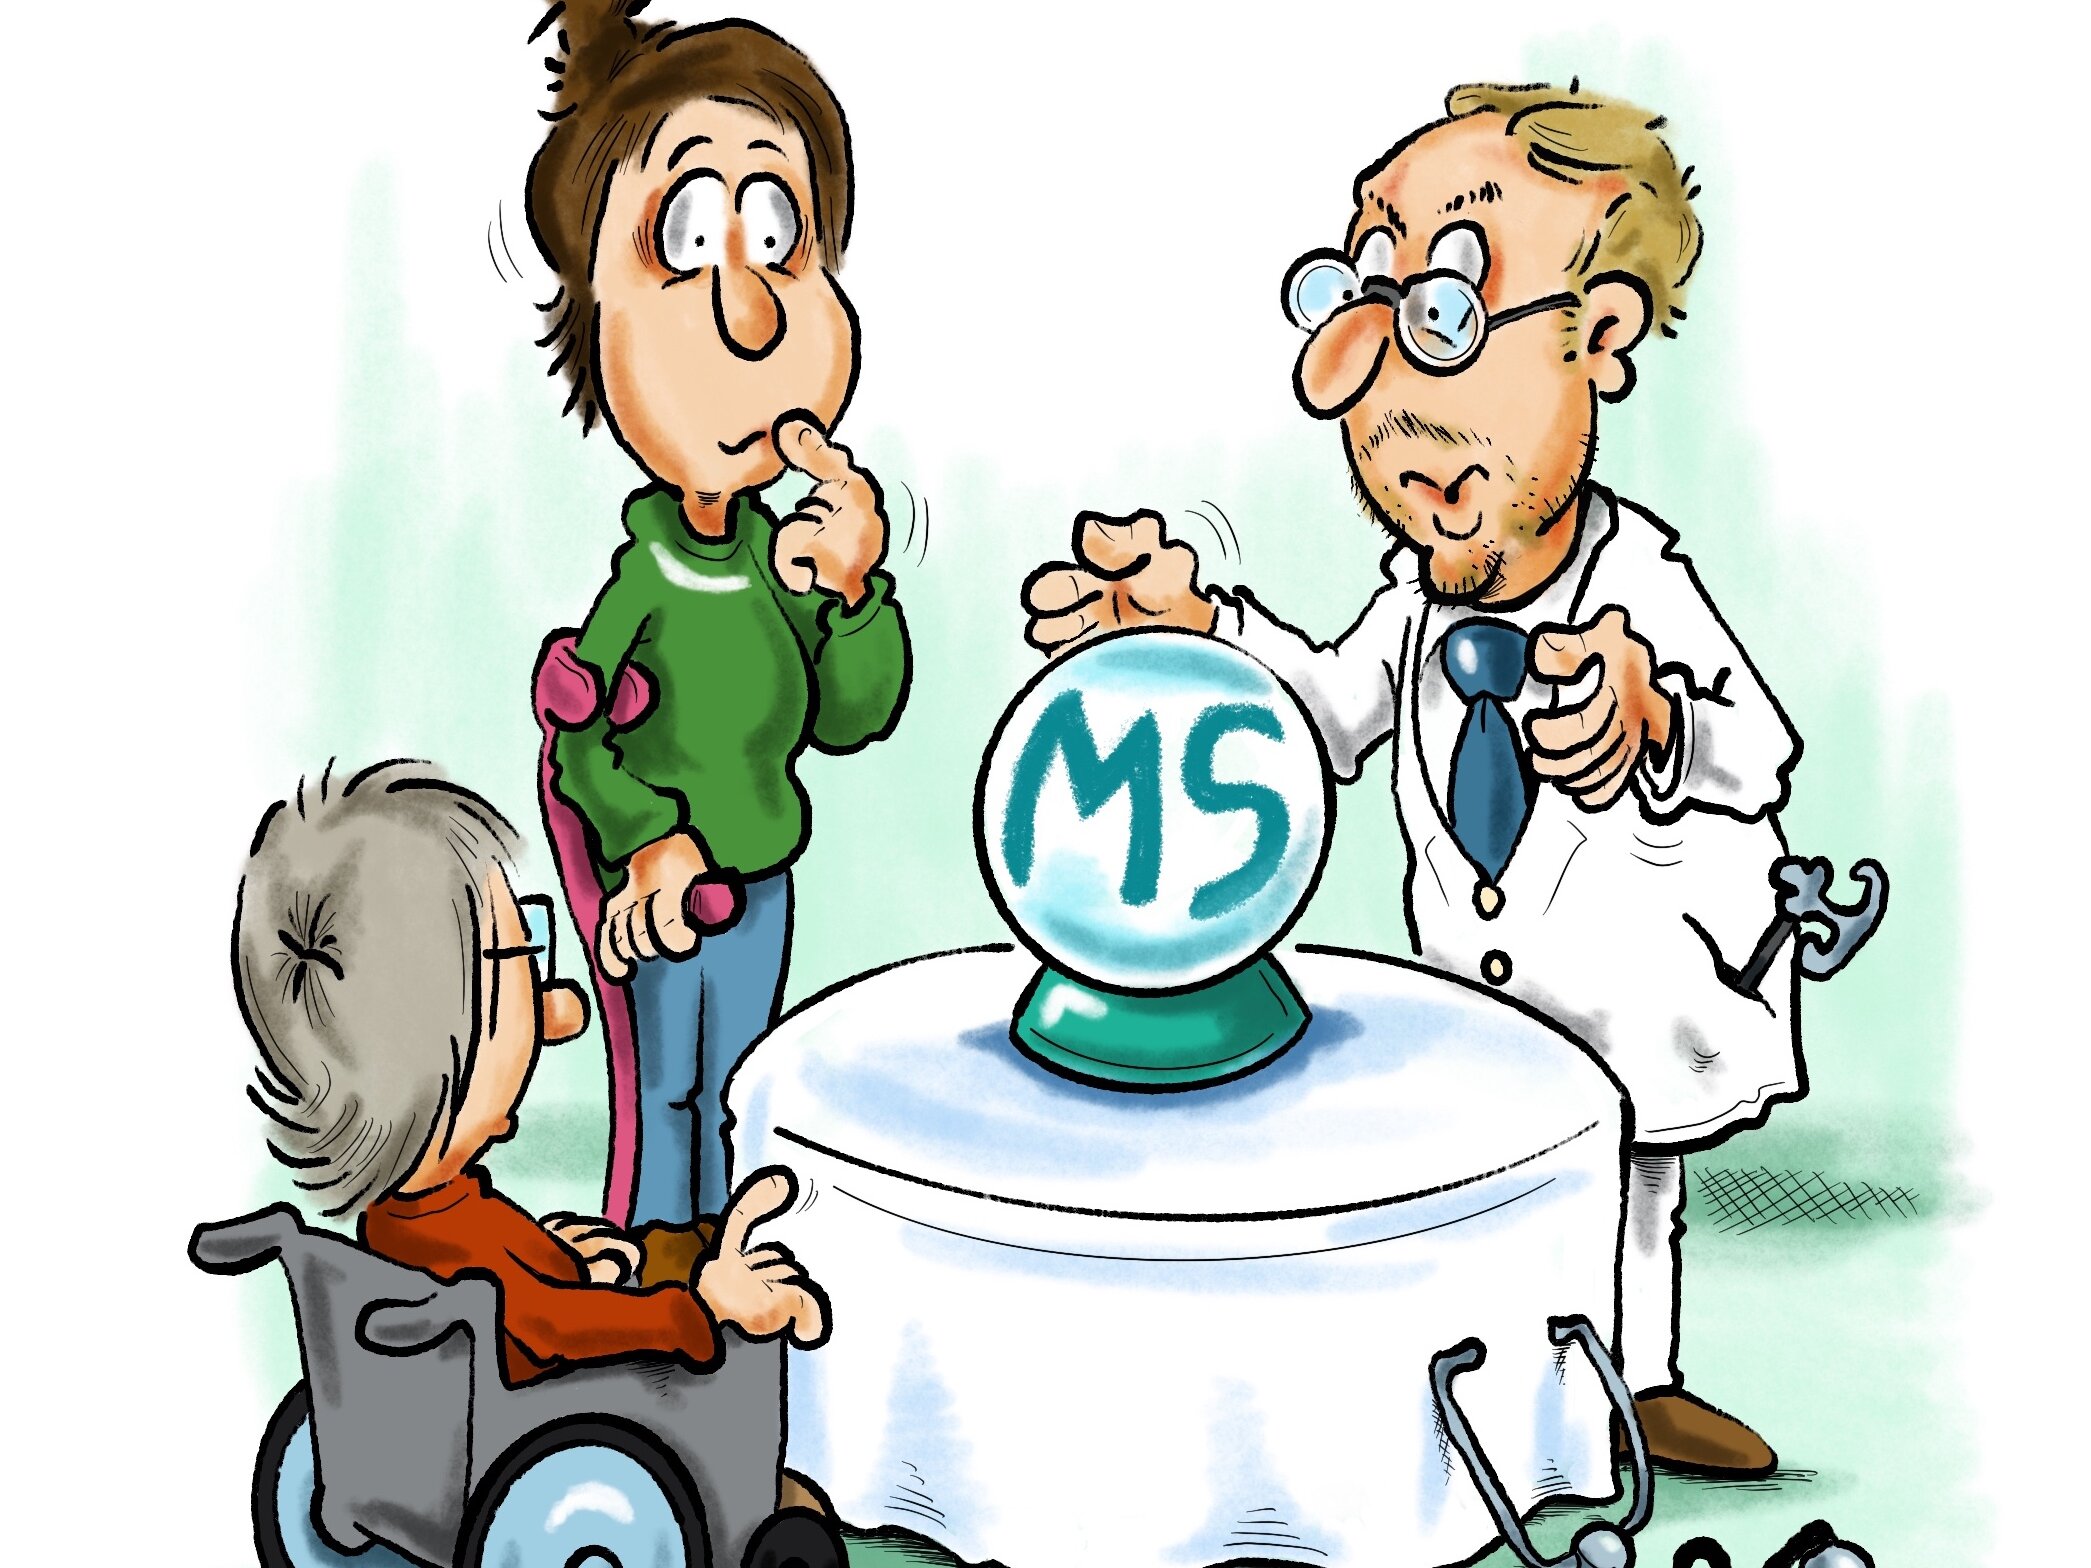 Zeichnung mit drei Menschen, die um eine Glaskugel herumstehen, in der "MS" steht.